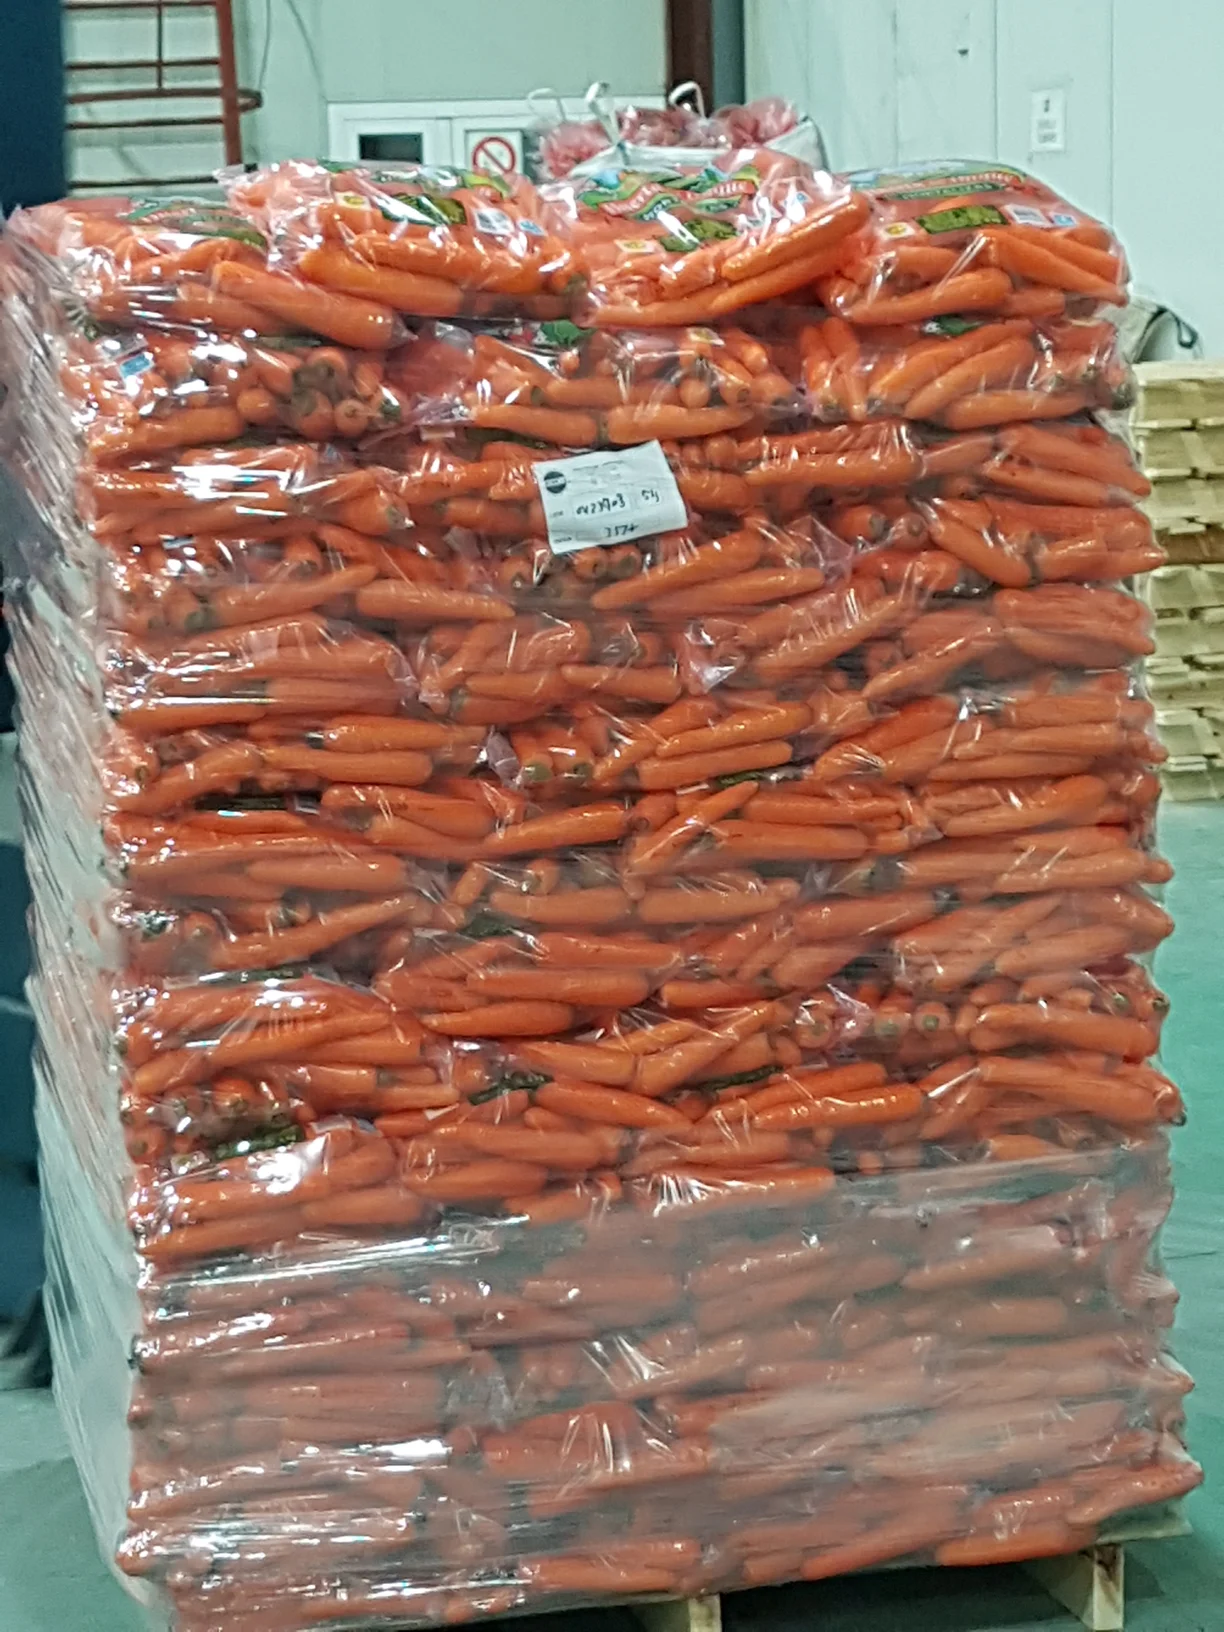 S Coop del Campo Glus I palet zanahorias envasadas.webp